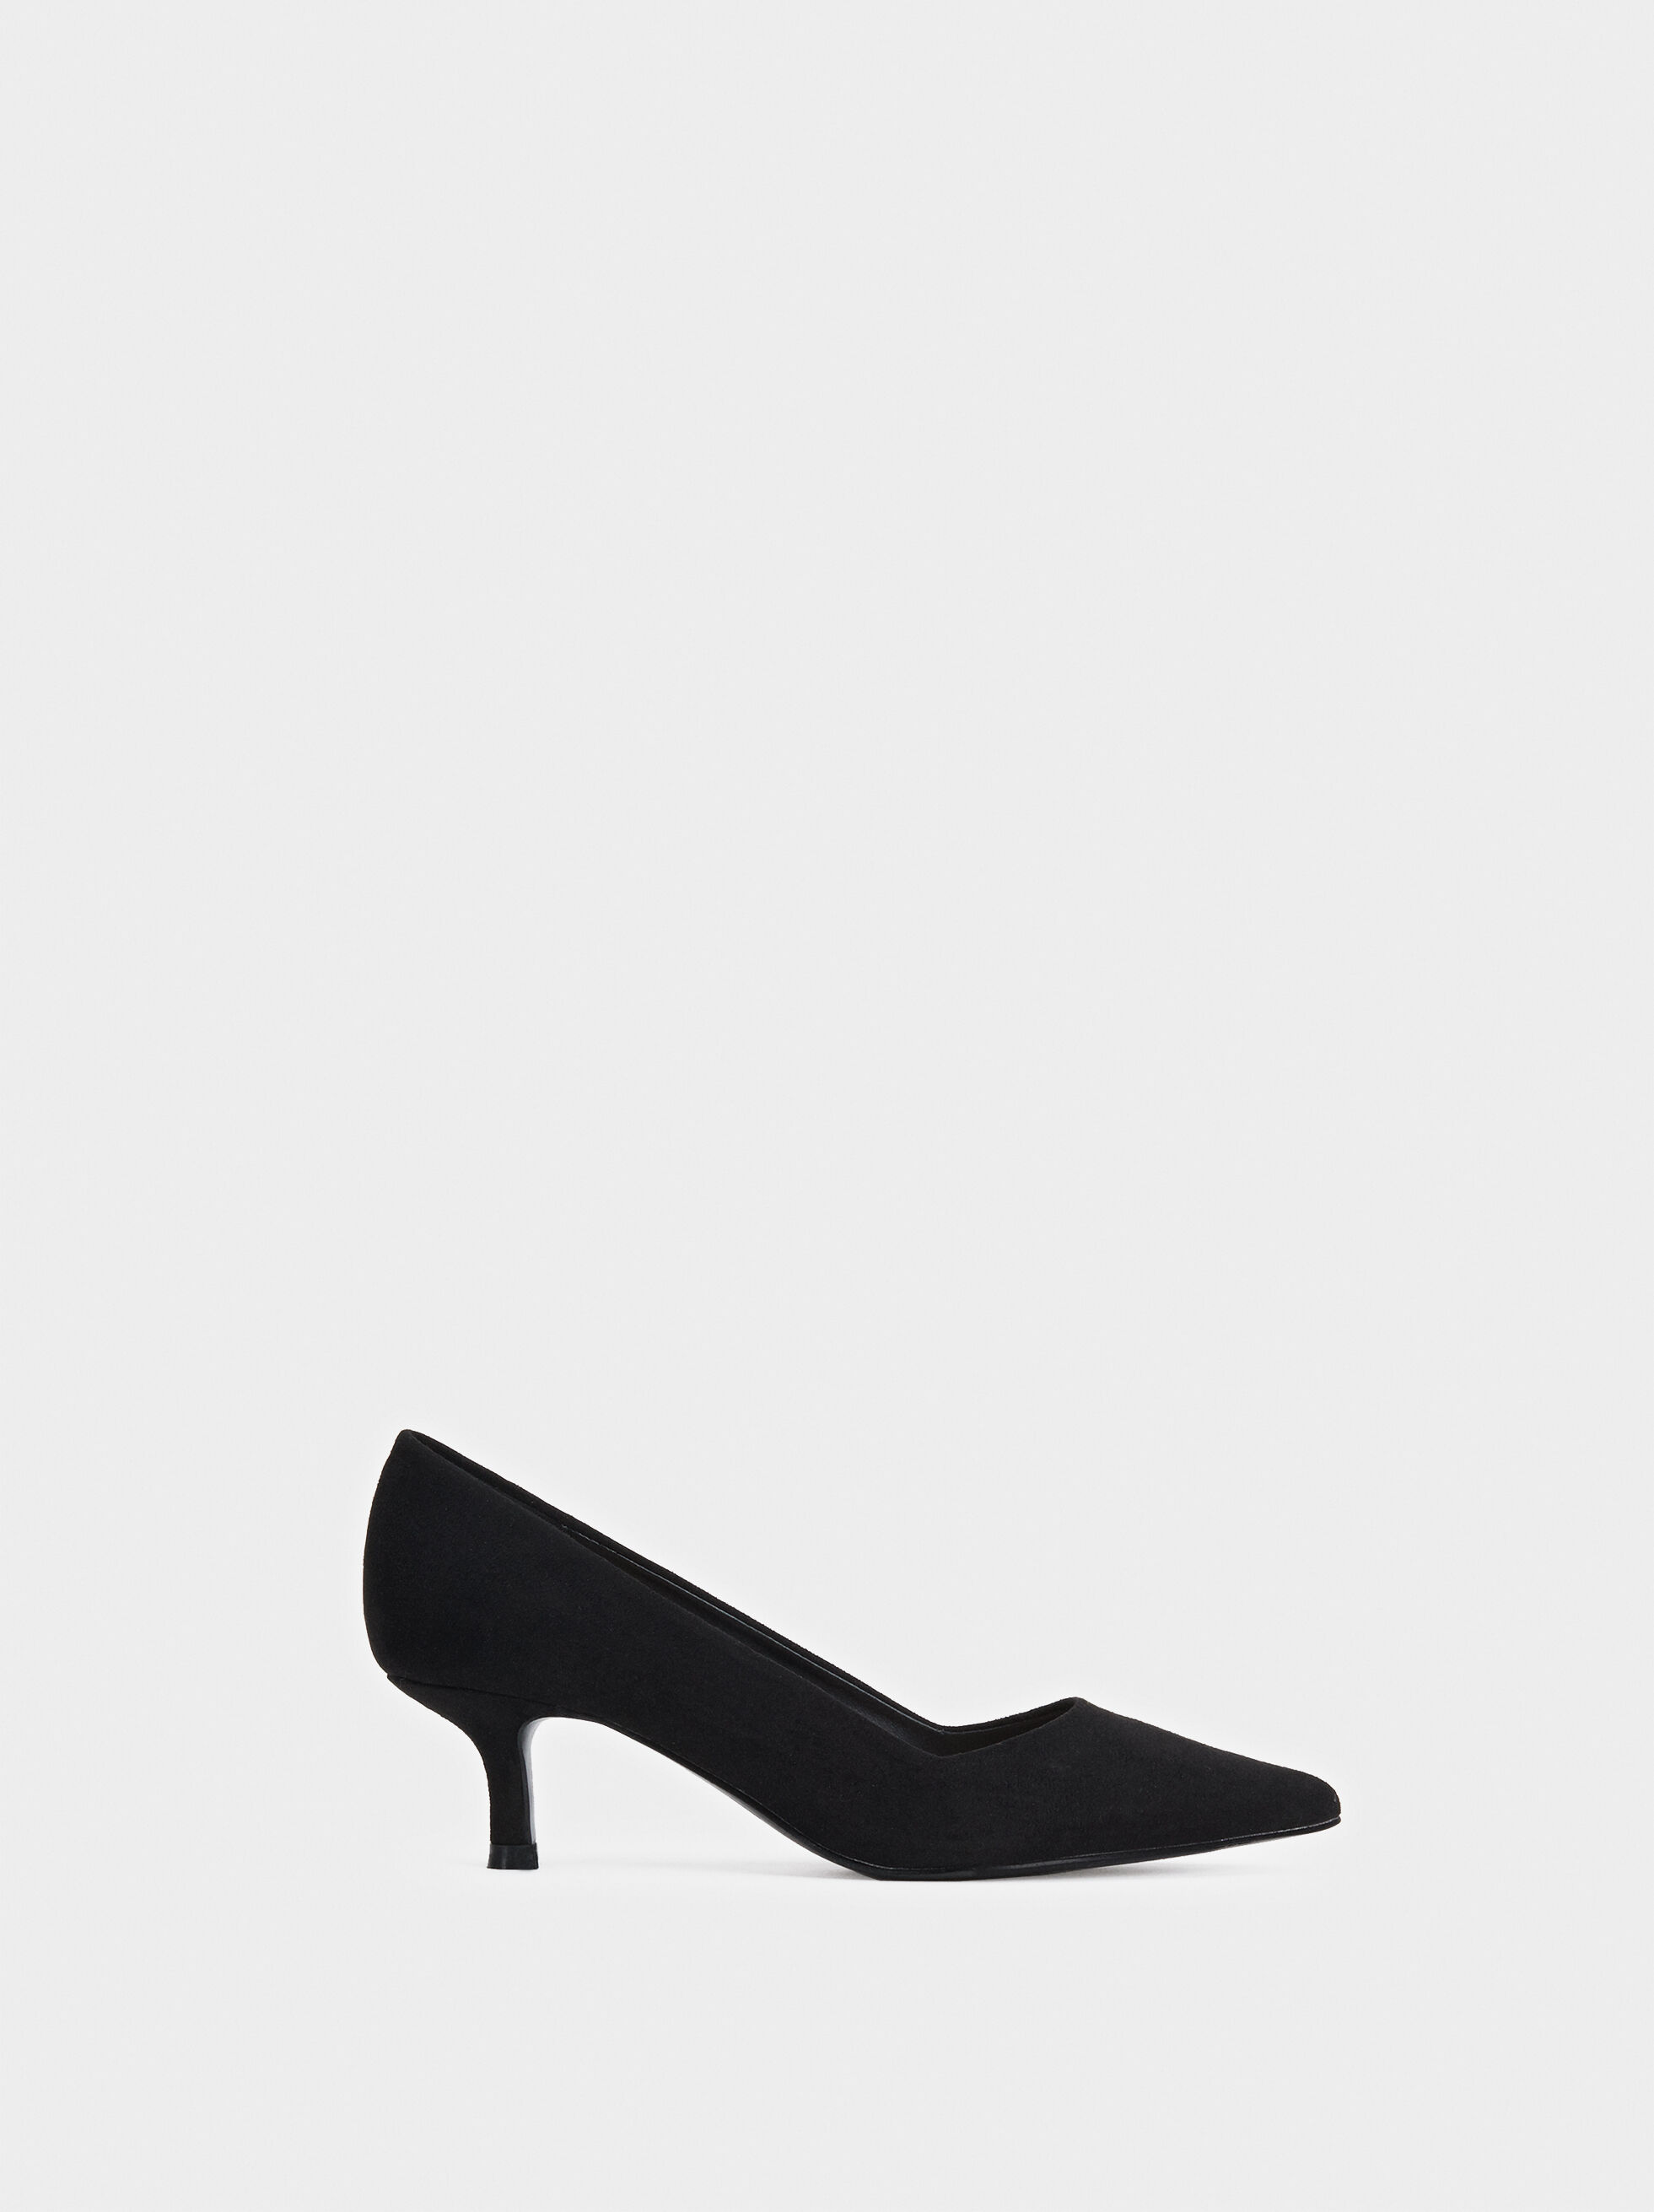 black medium heels